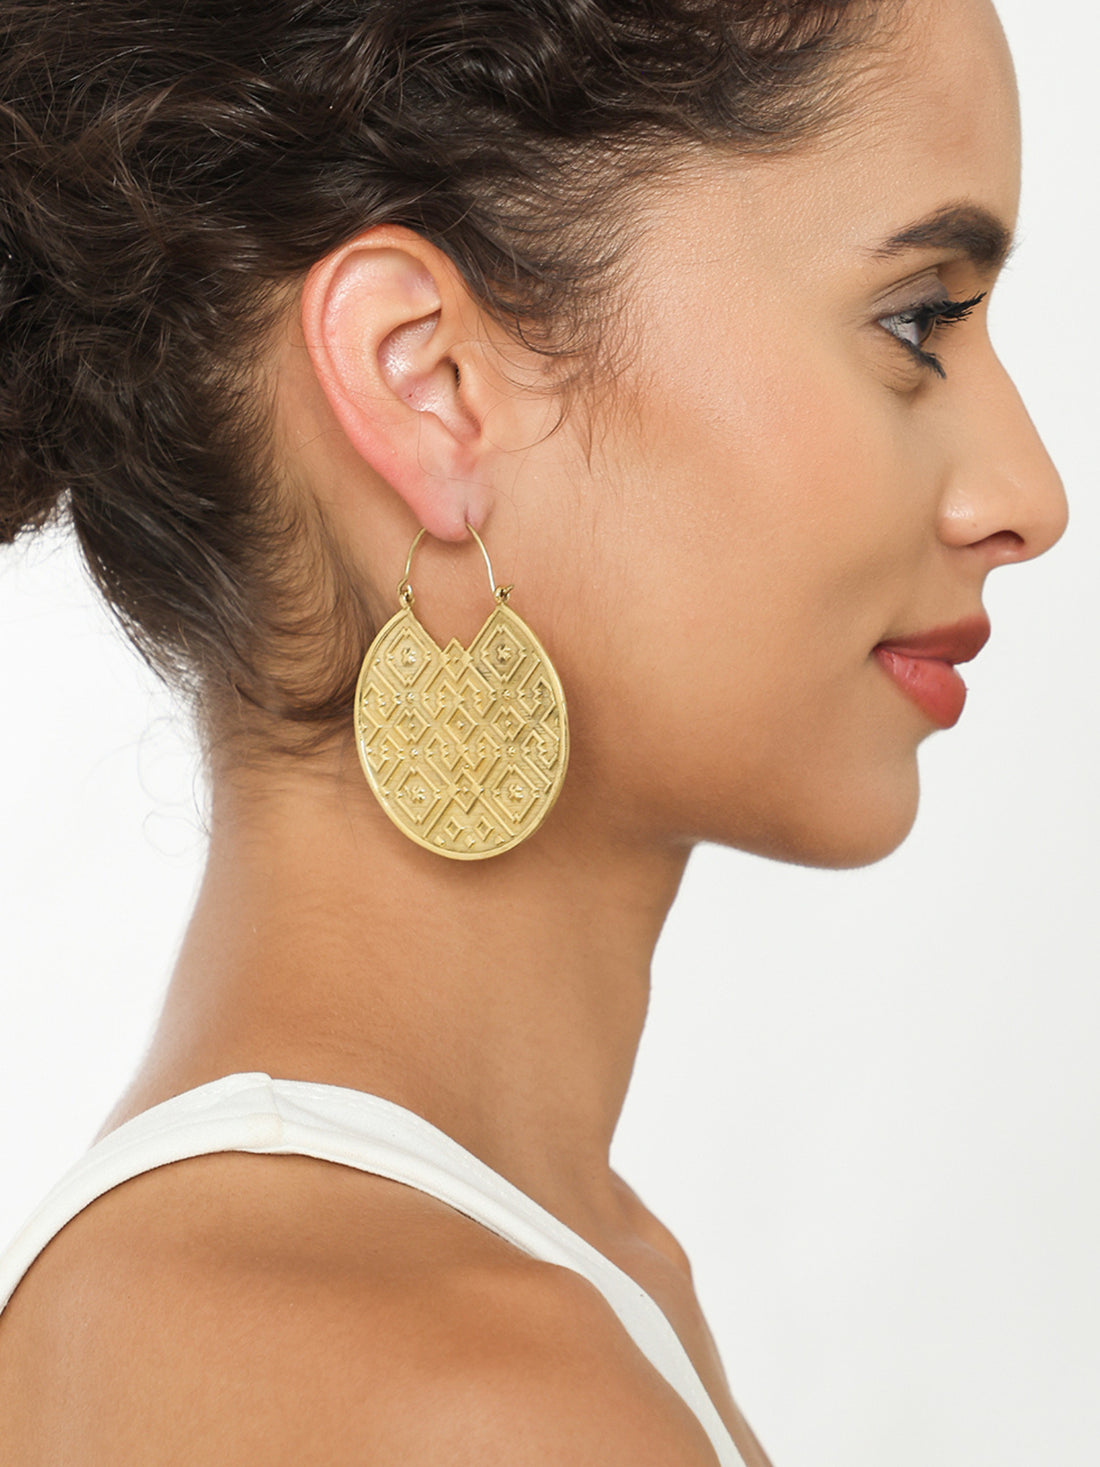 Festive Wear Hoops Earrings - Western Gold and Silver-Plated Brass Earrings By Studio One Love